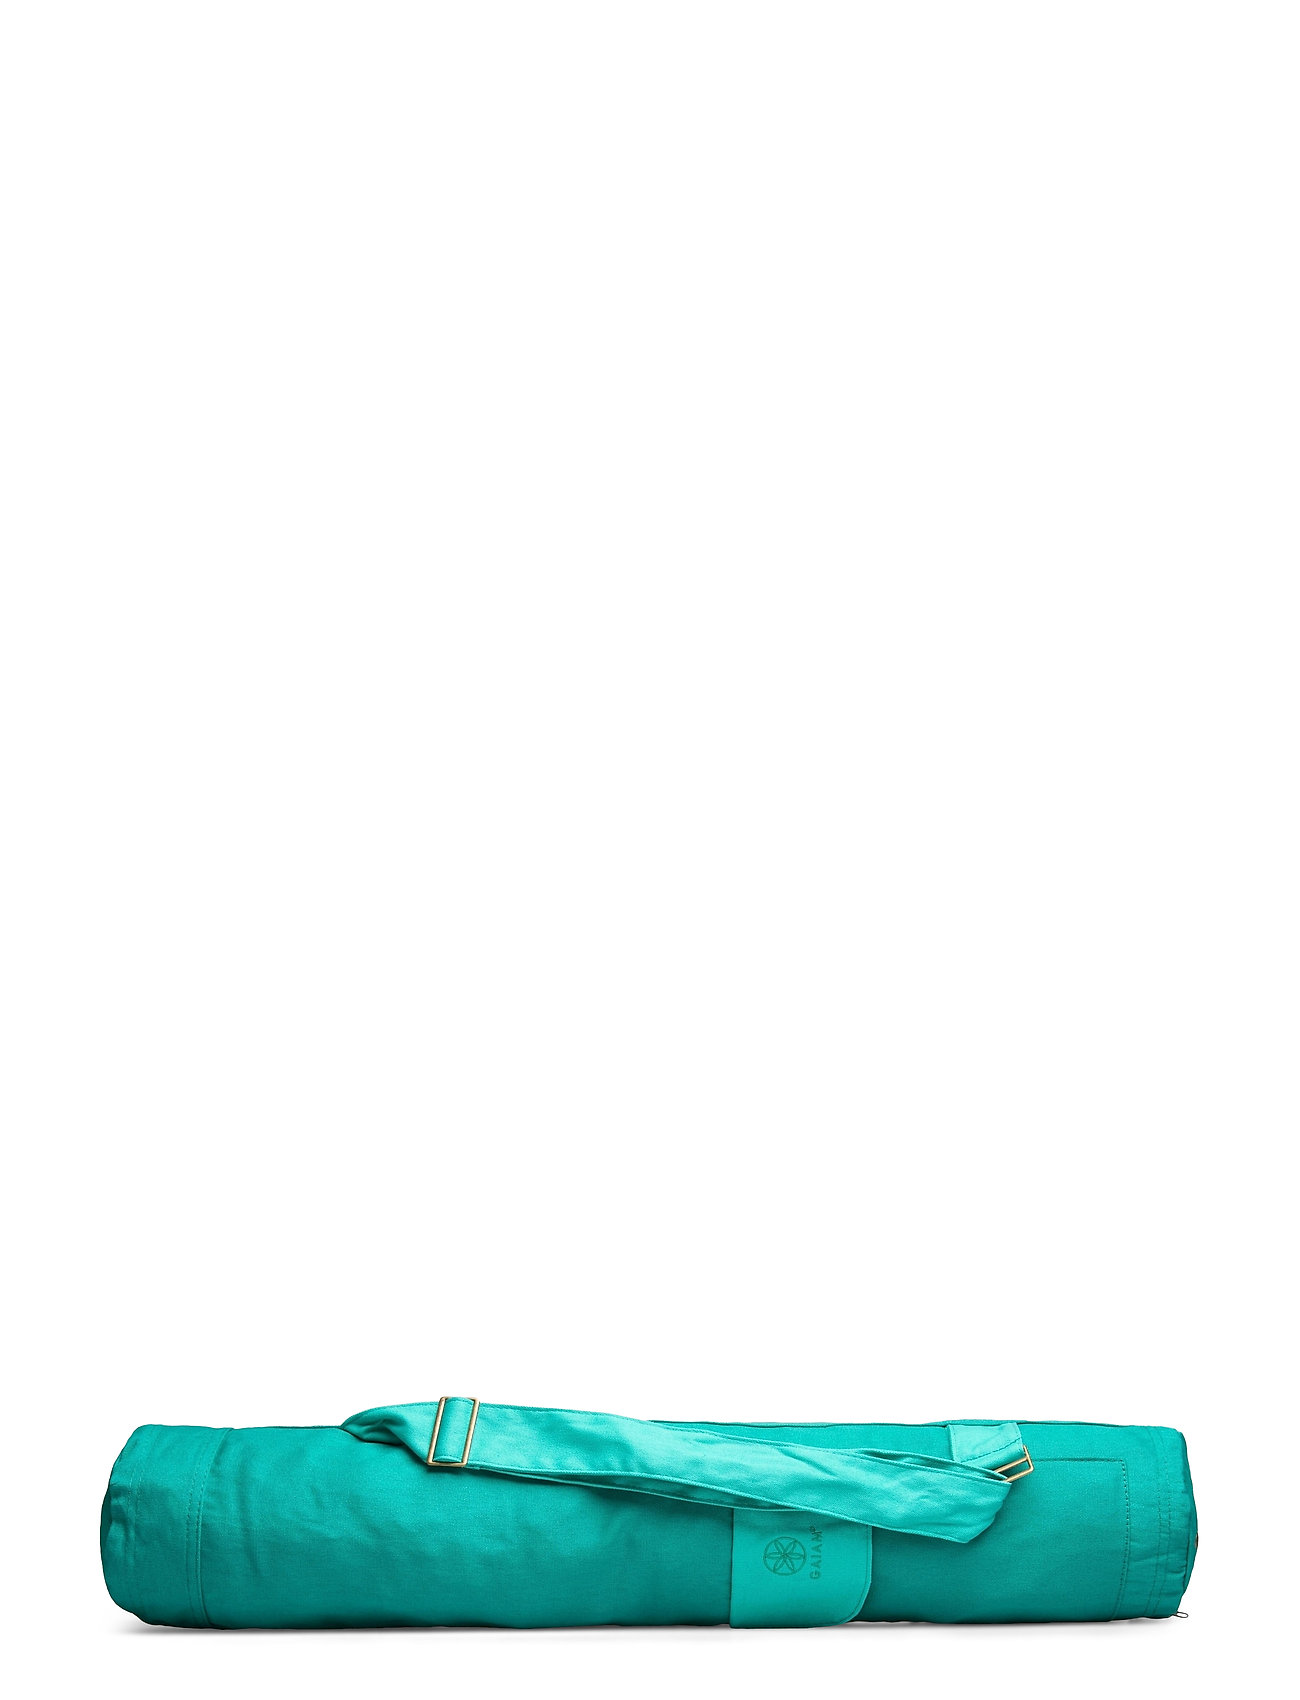 Gaiam Gaiam Turquoise Sea Yoga Mat Bag - Sports Equipment